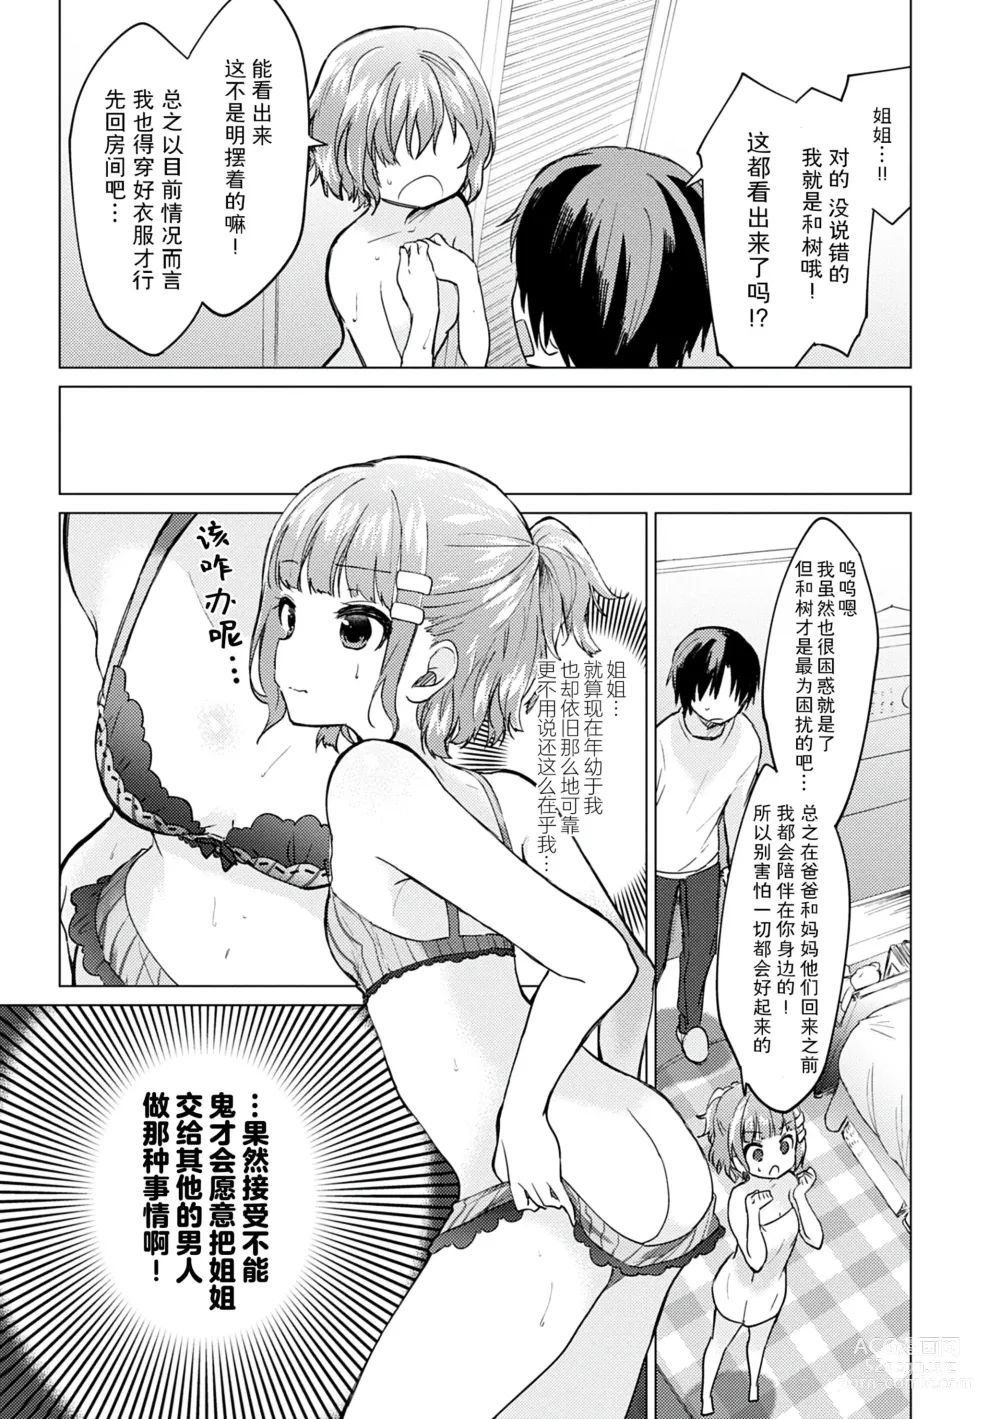 Page 171 of manga Otouto Senyou